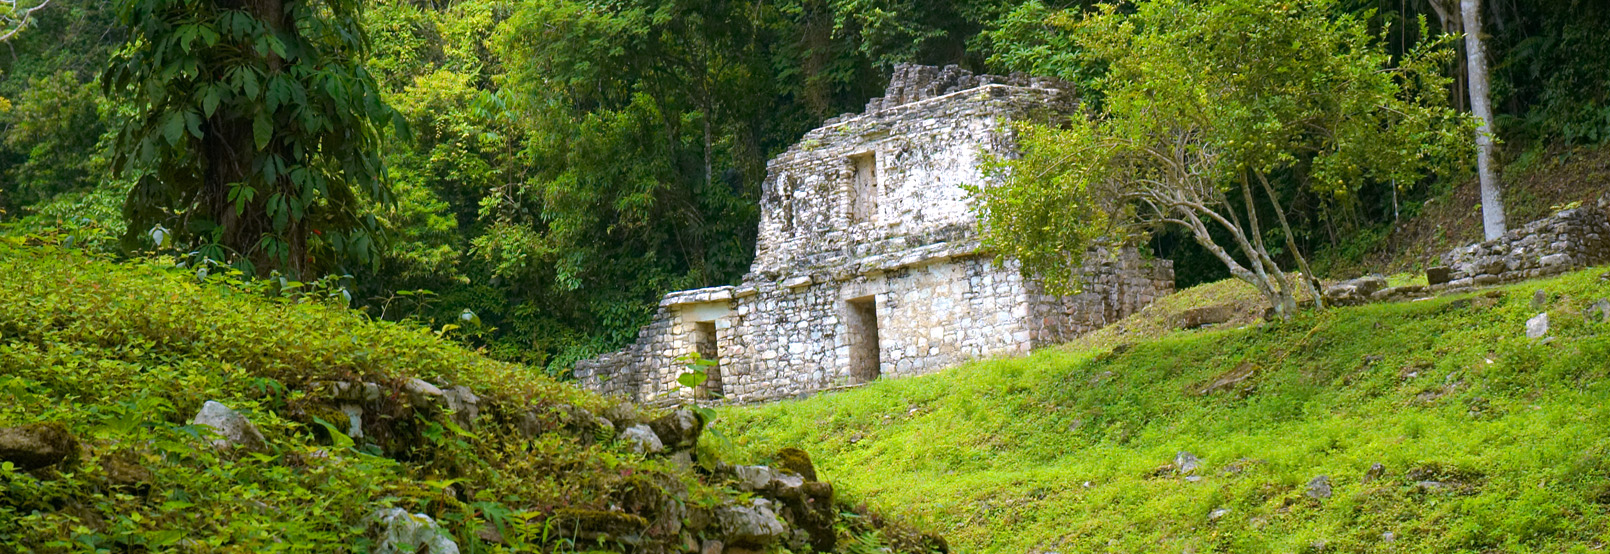 Arqueología Chiapas 2